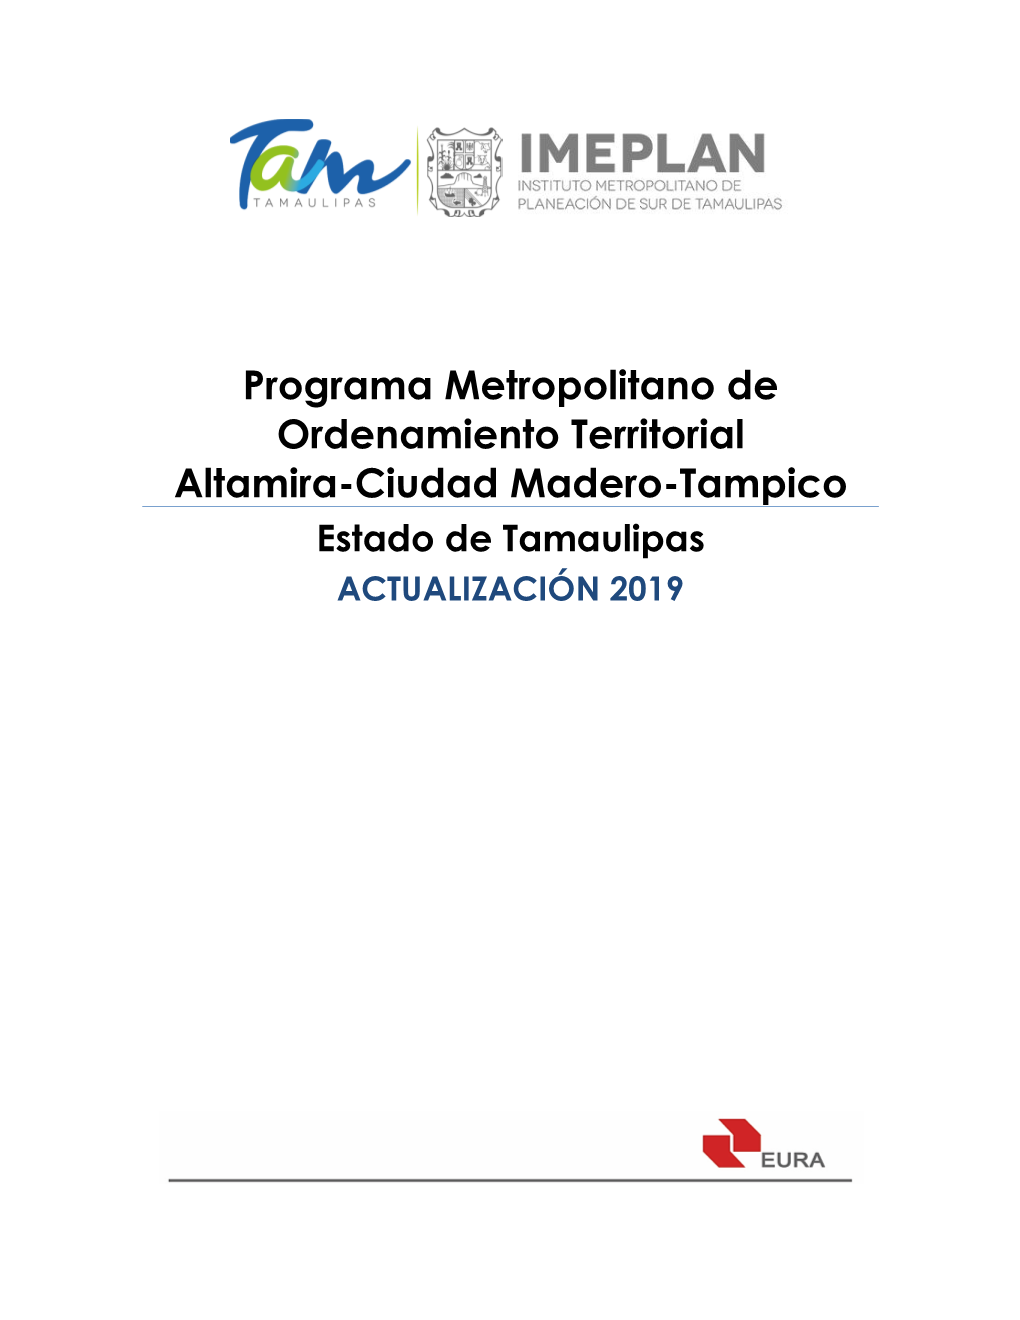 Programa Metropolitano De Ordenamiento Territorial Altamira-Ciudad Madero-Tampico Estado De Tamaulipas